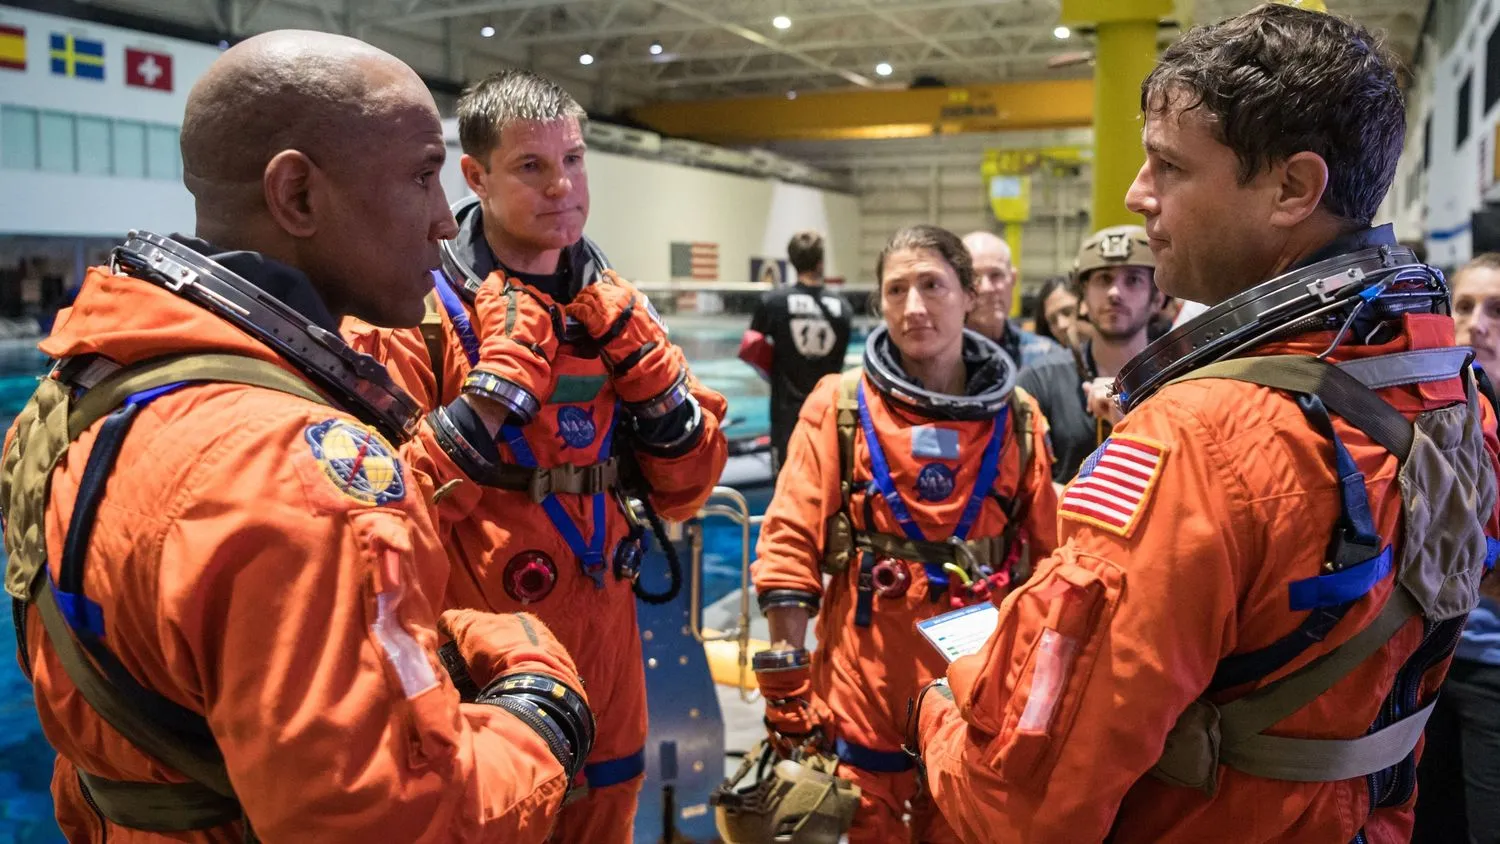 Mehr über den Artikel erfahren Das ist Teil der Weltraumforschung“: Artemis-2-Astronauten unbeeindruckt von Verzögerungen bei der Mondmission (exklusiv)